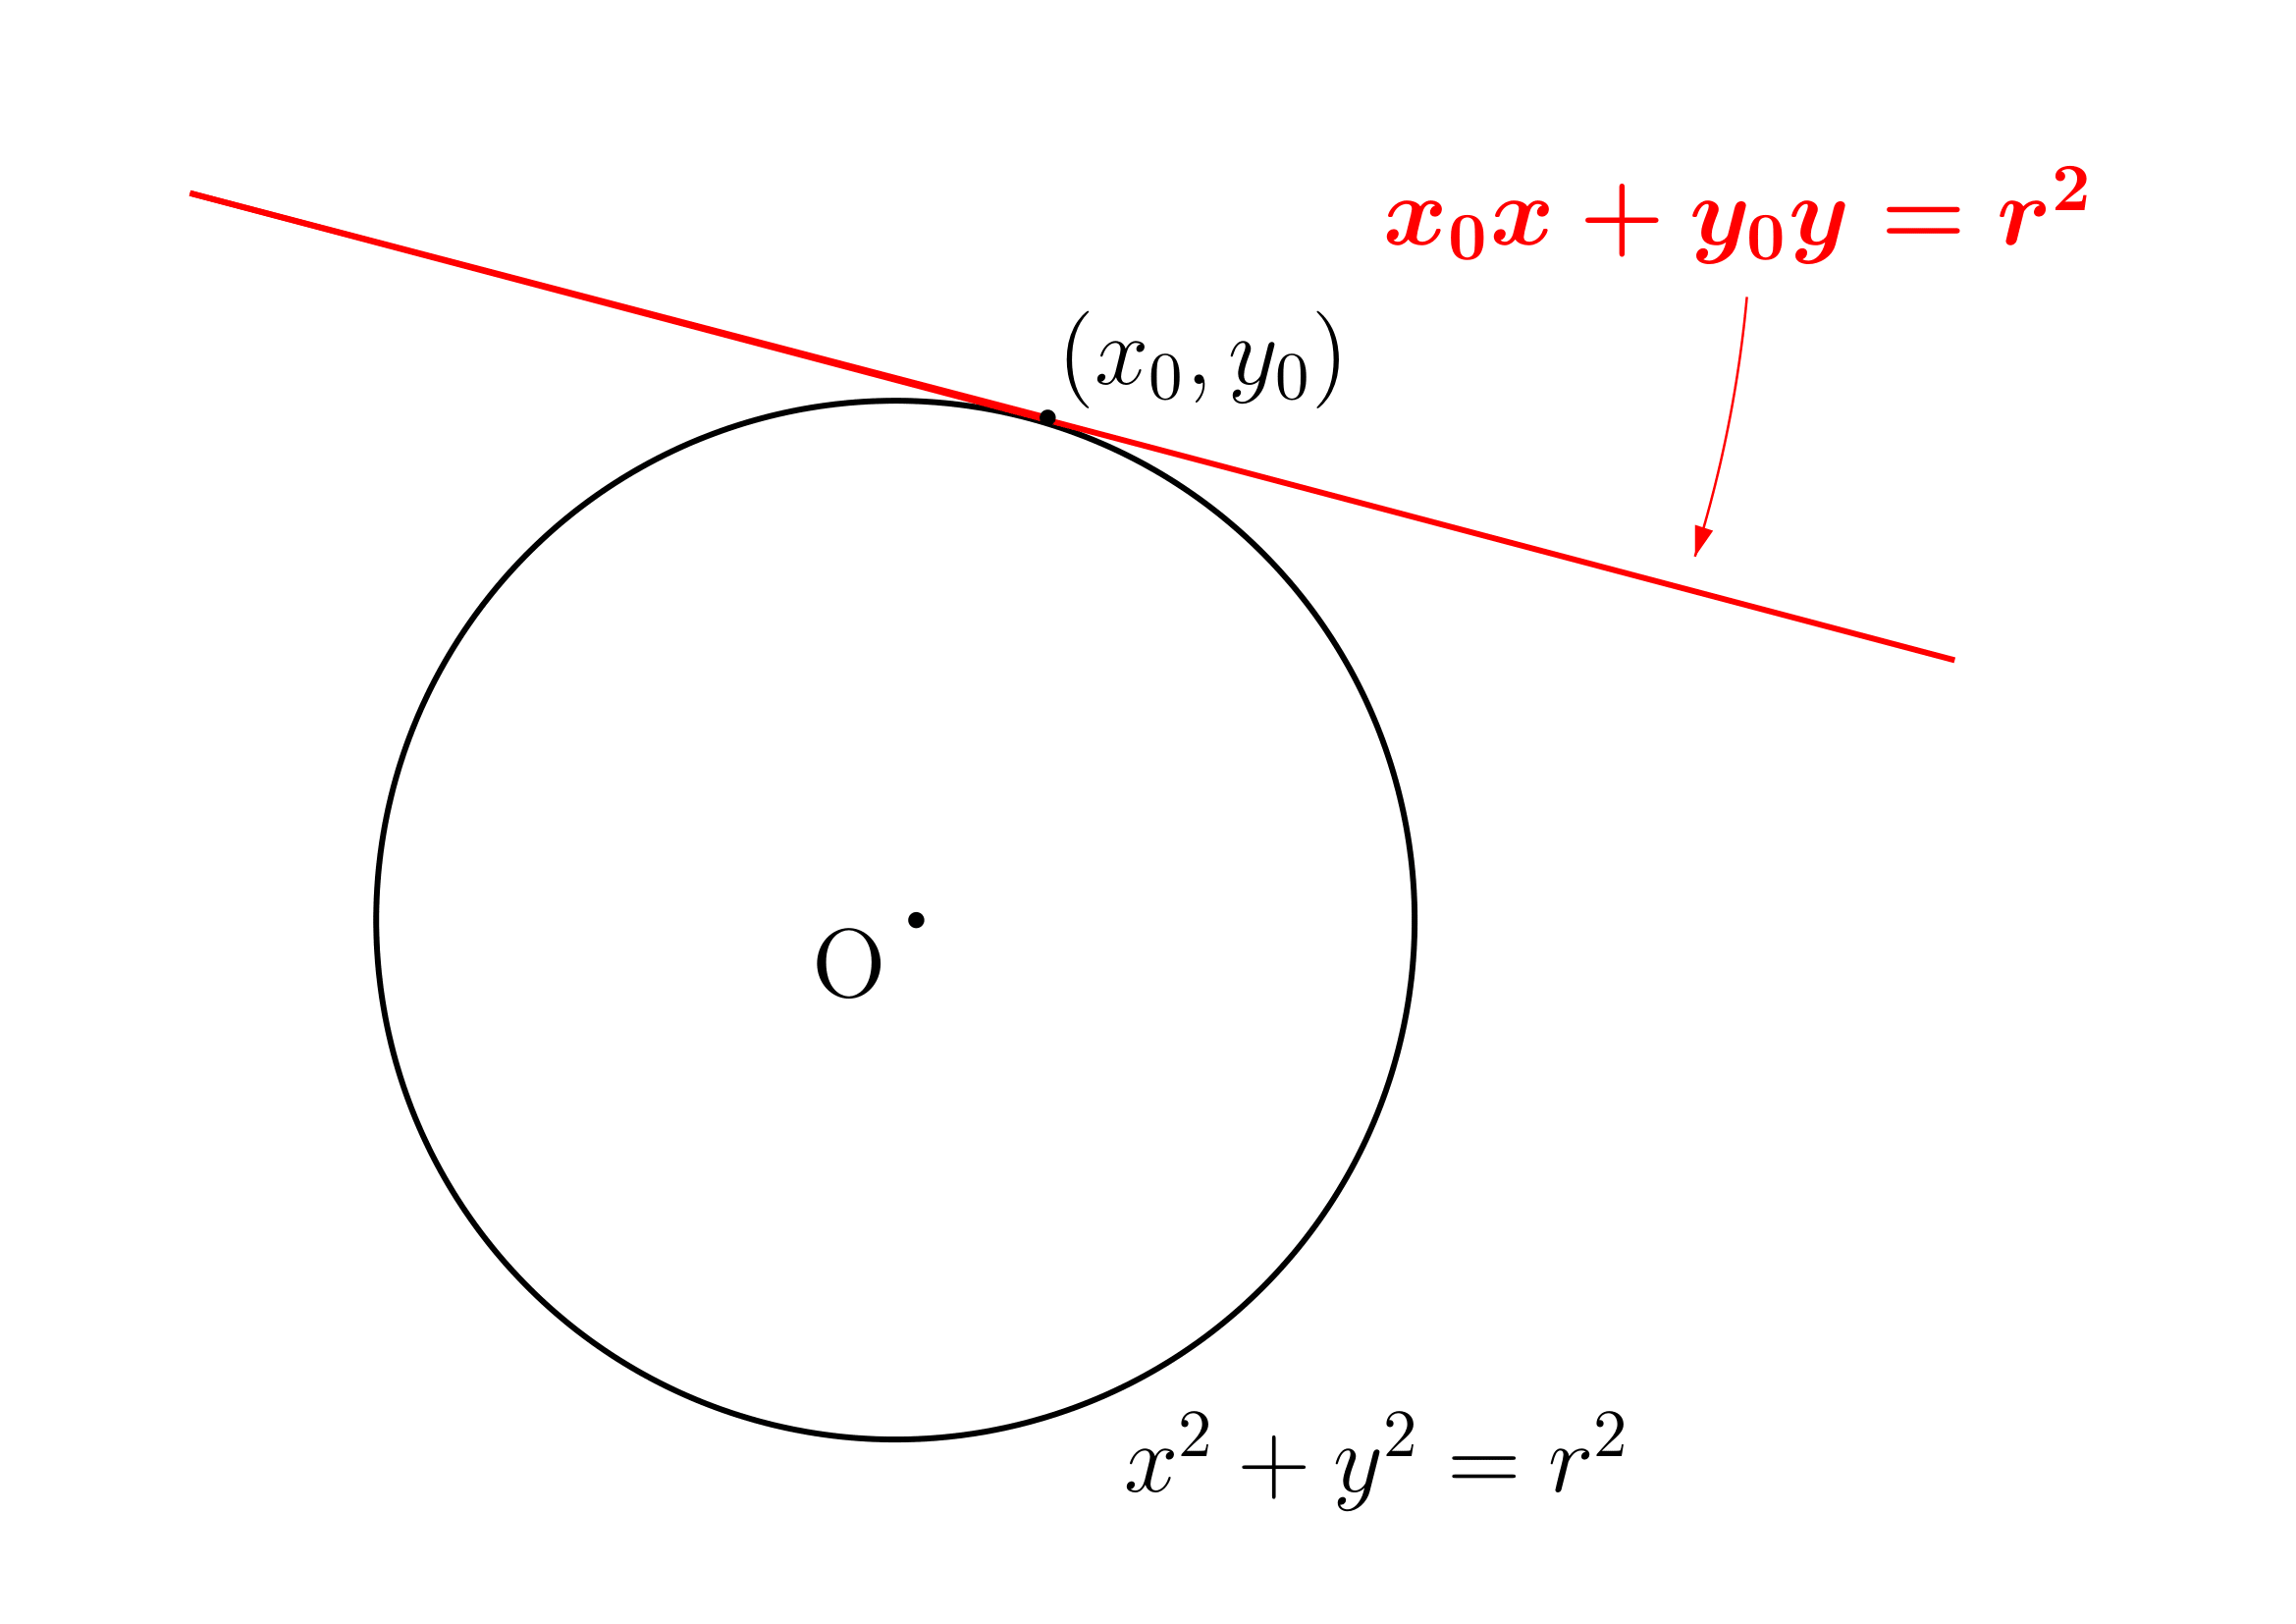 円の接線の方程式(中心が原点)